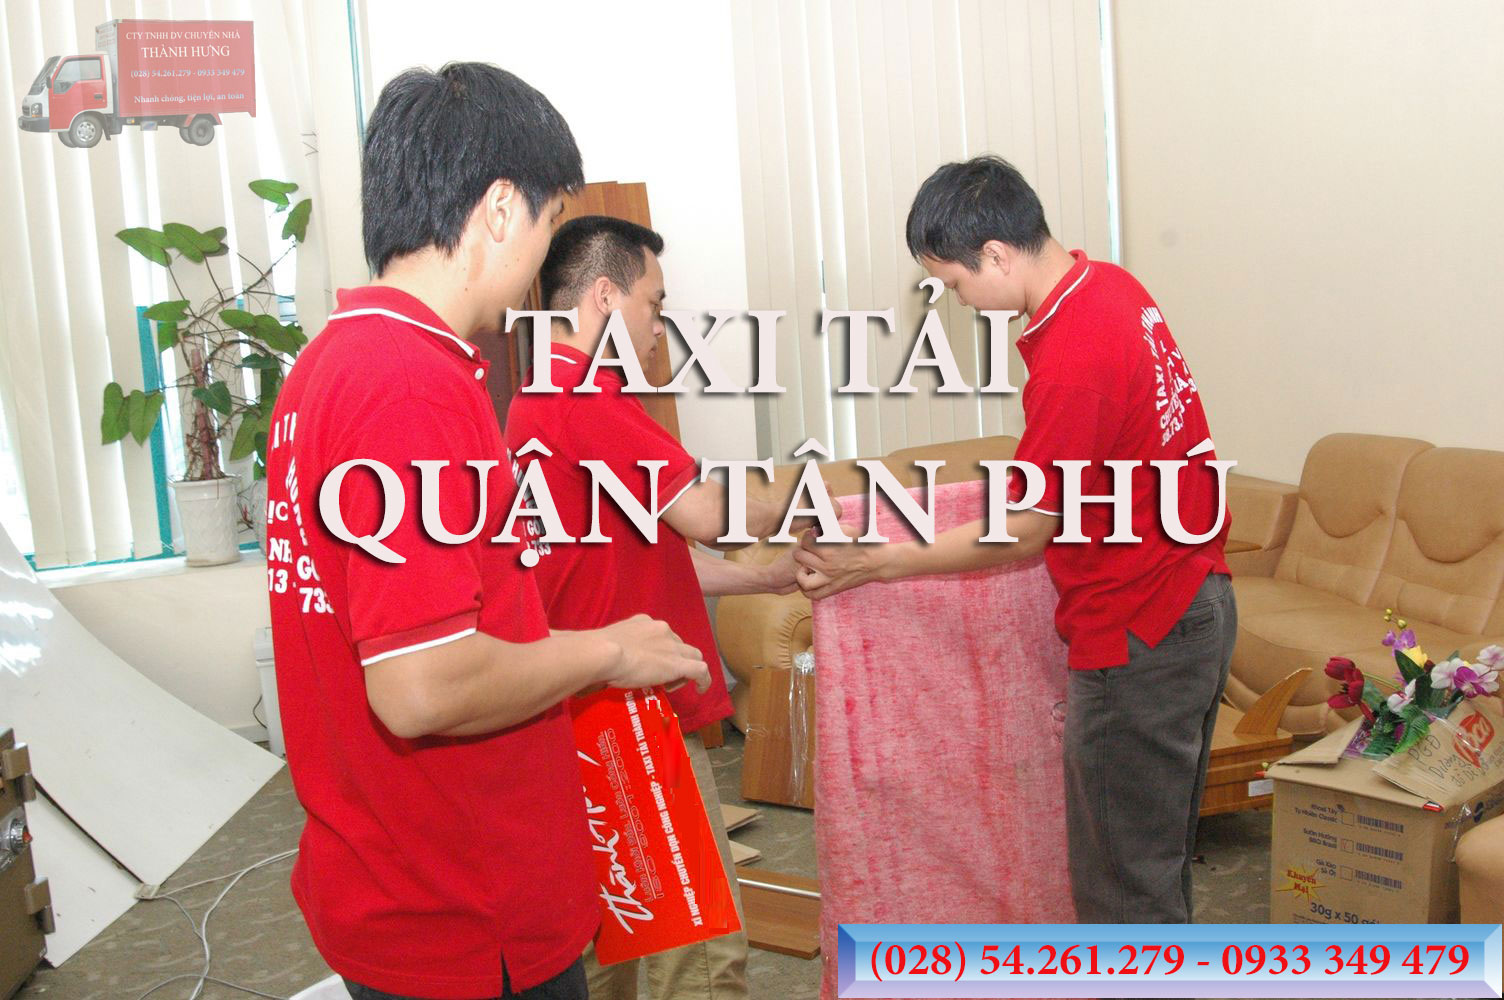 Taxi Tải Quận Tân Phú,Taxi Tai Quan Tan Phu